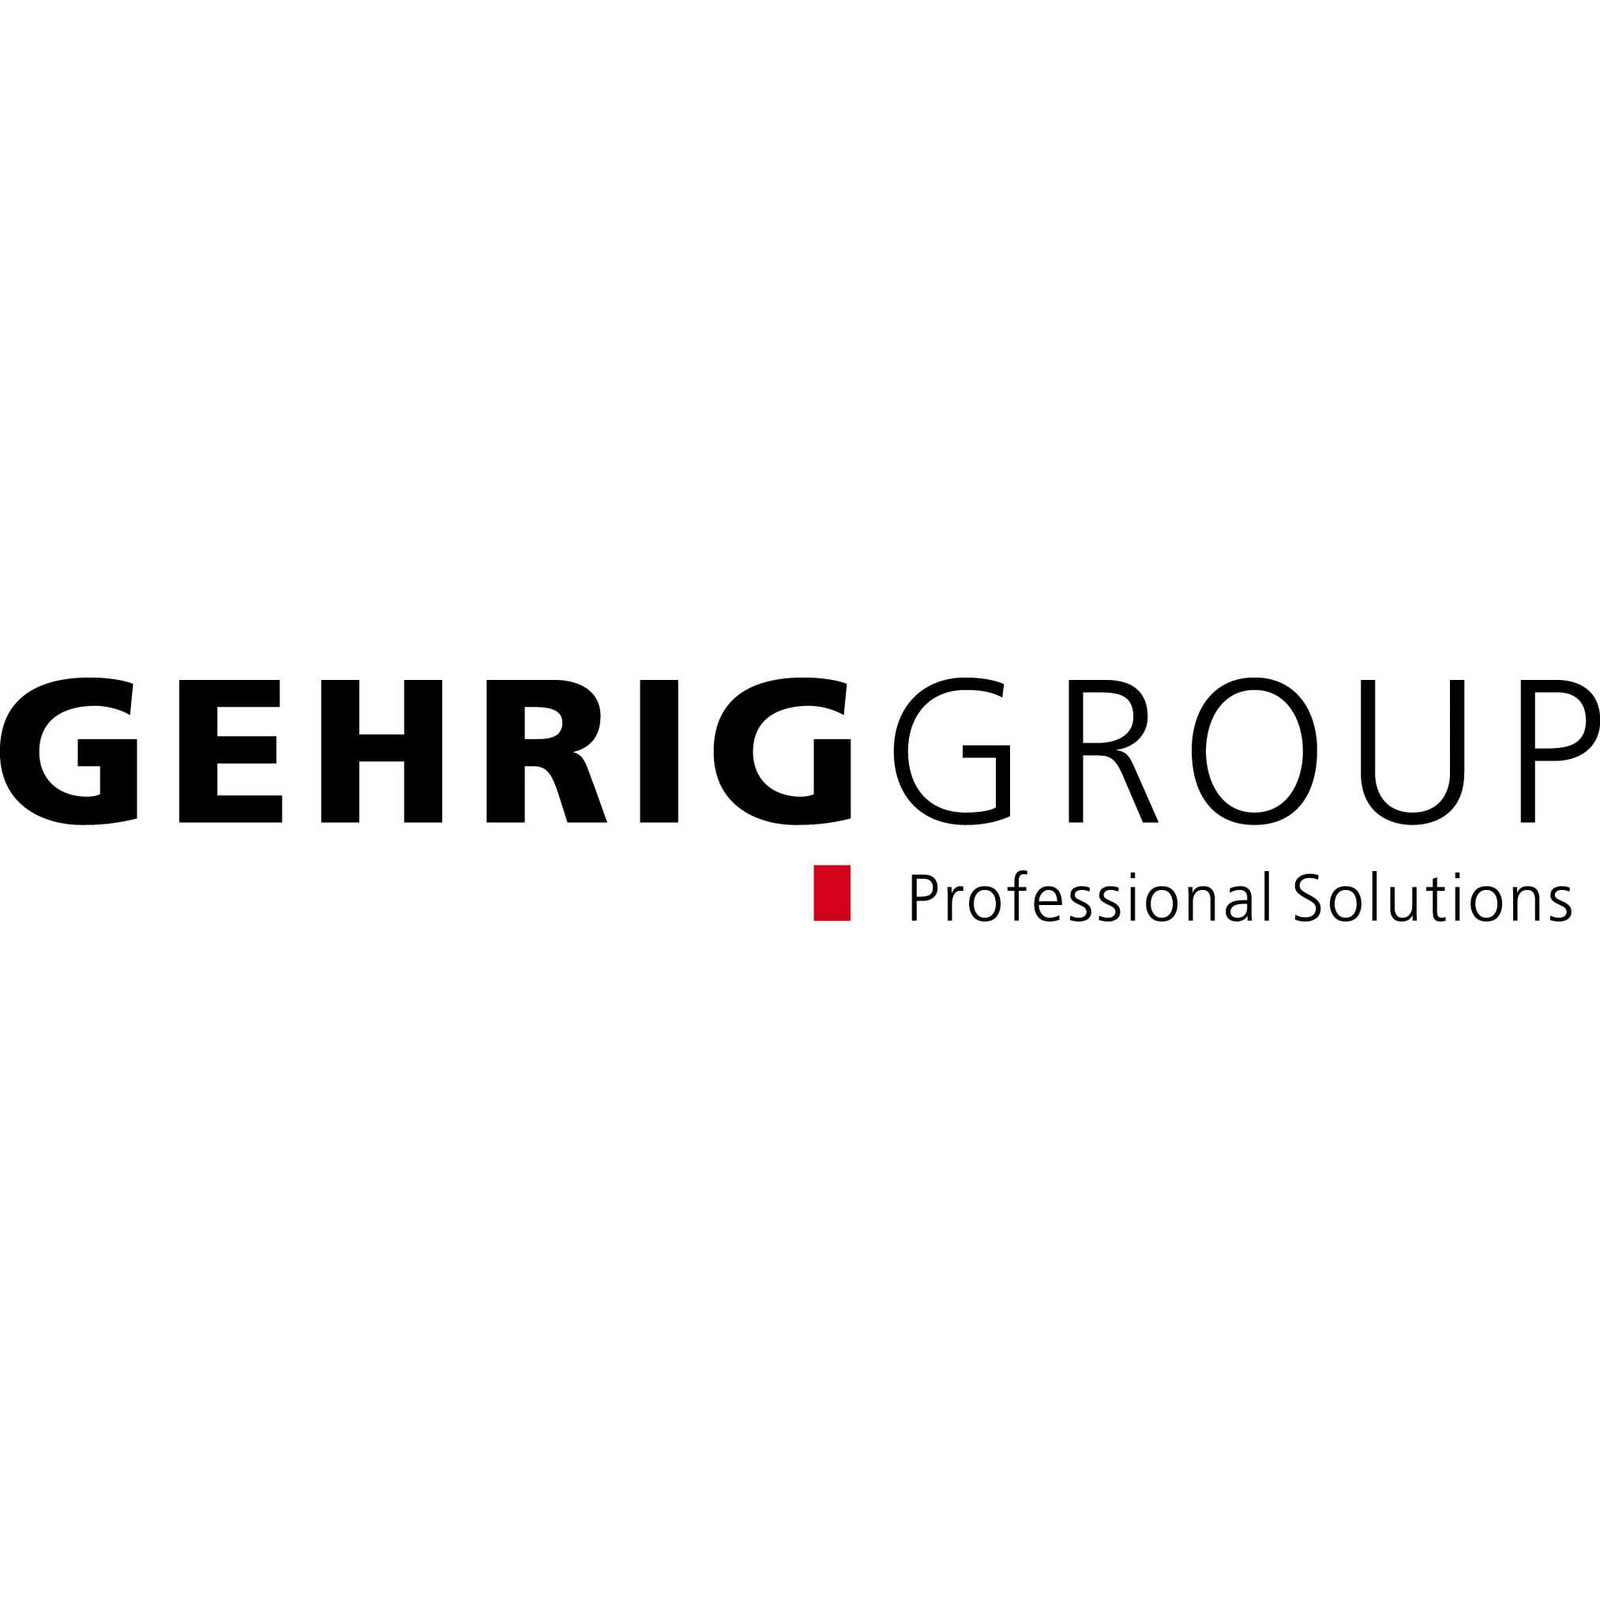 Gehrig Group Schweiz